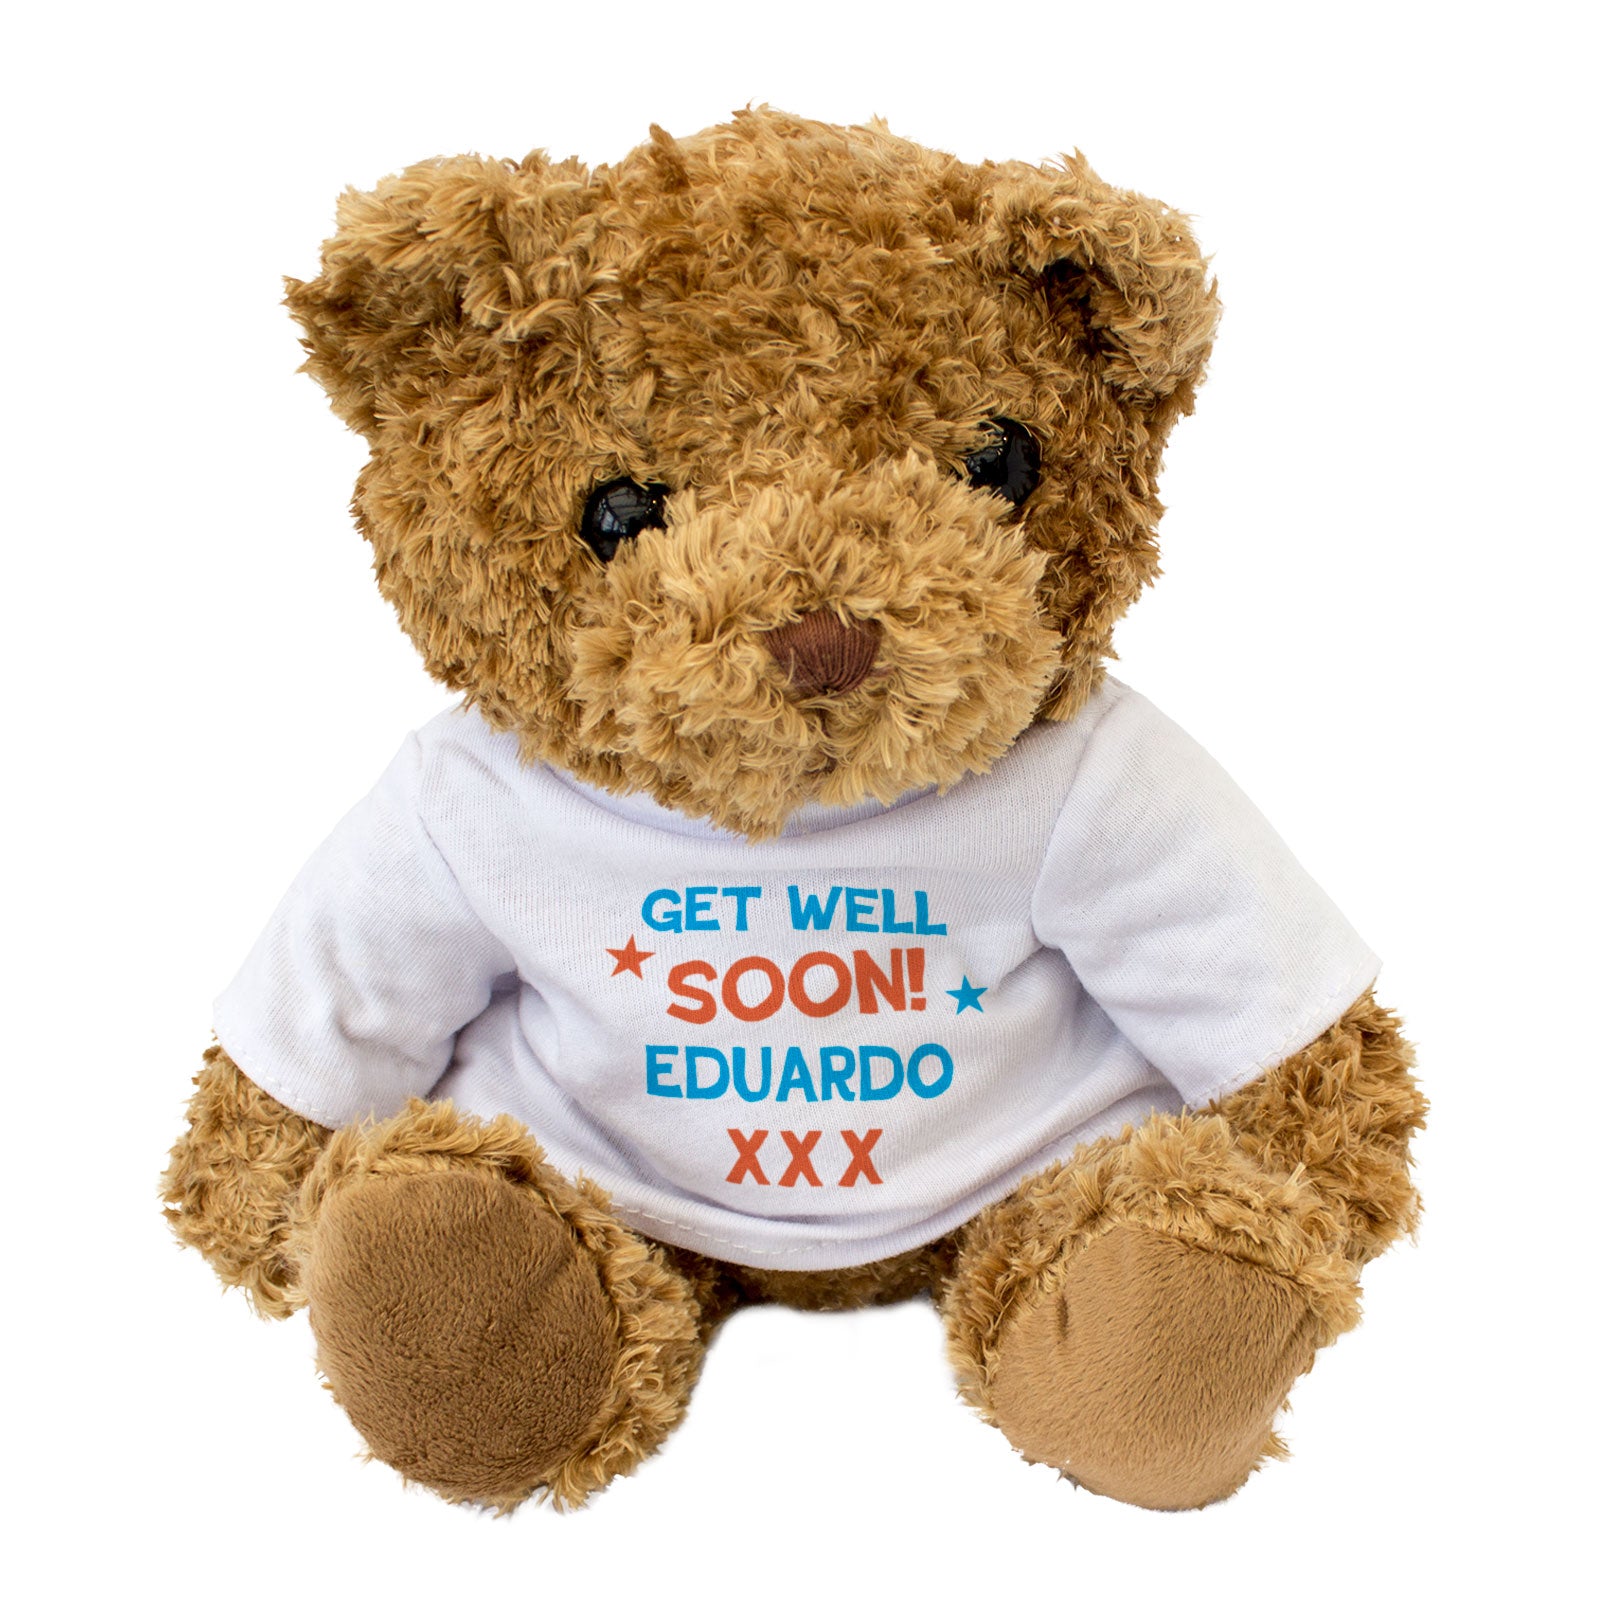 Get Well Soon Eduardo - Teddy Bear